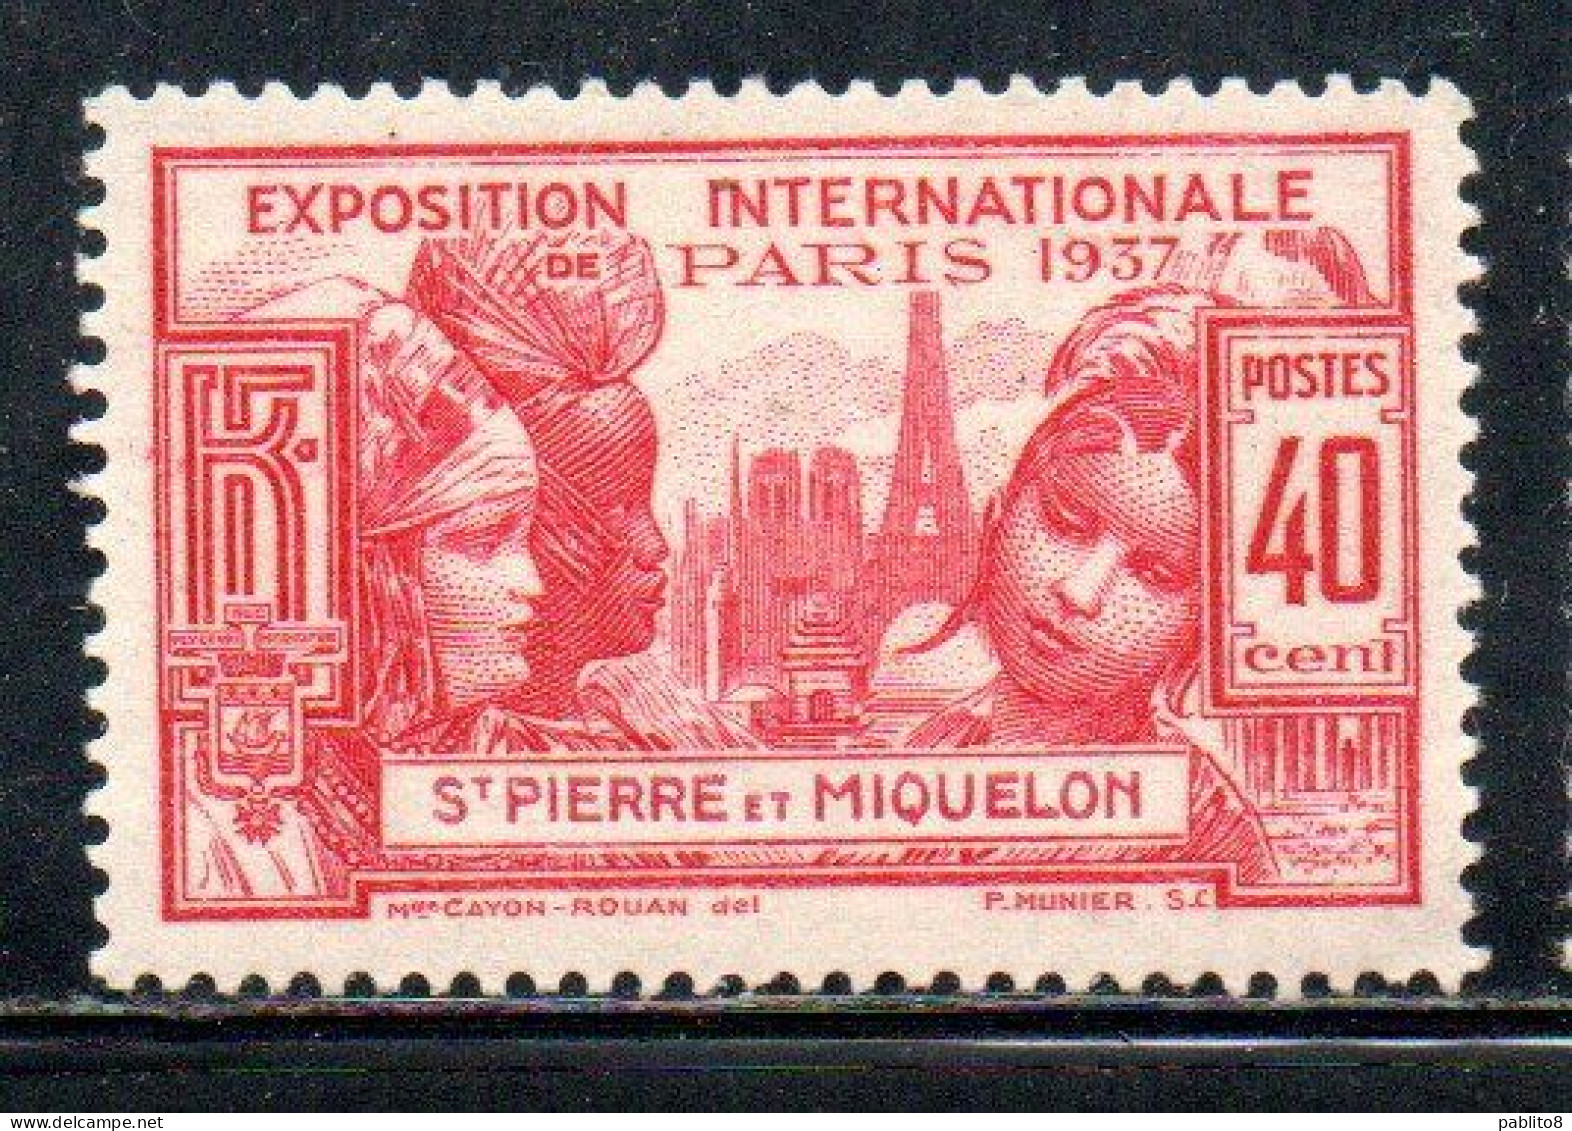 ST. SAINT PIERRE AND ET MIQUELON 1937 PARIS INTERNATIONAL EXPOSITION ISSUE 40c MLH - Nuevos